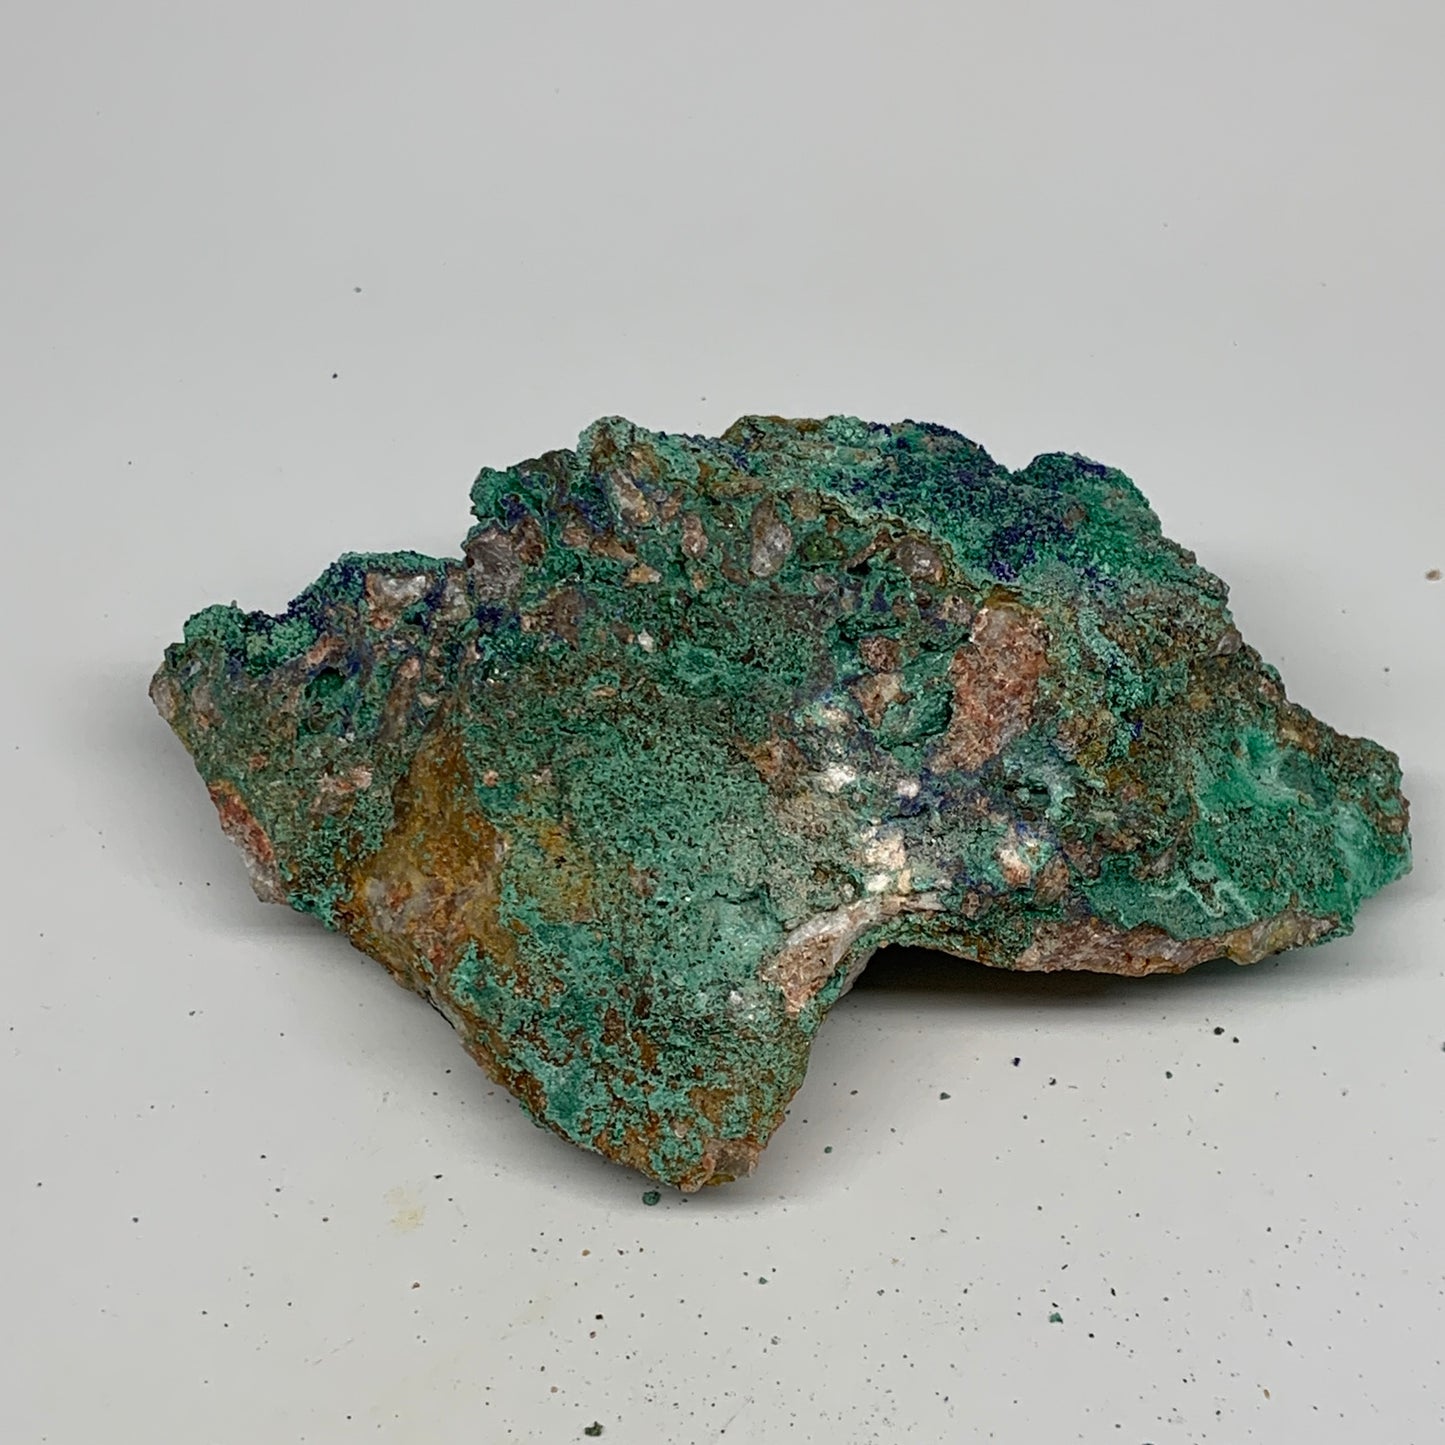 1138g, 7.1"x4.7"x2.8", Rough Azurite Malachite Mineral Specimen @Morocco, B10913